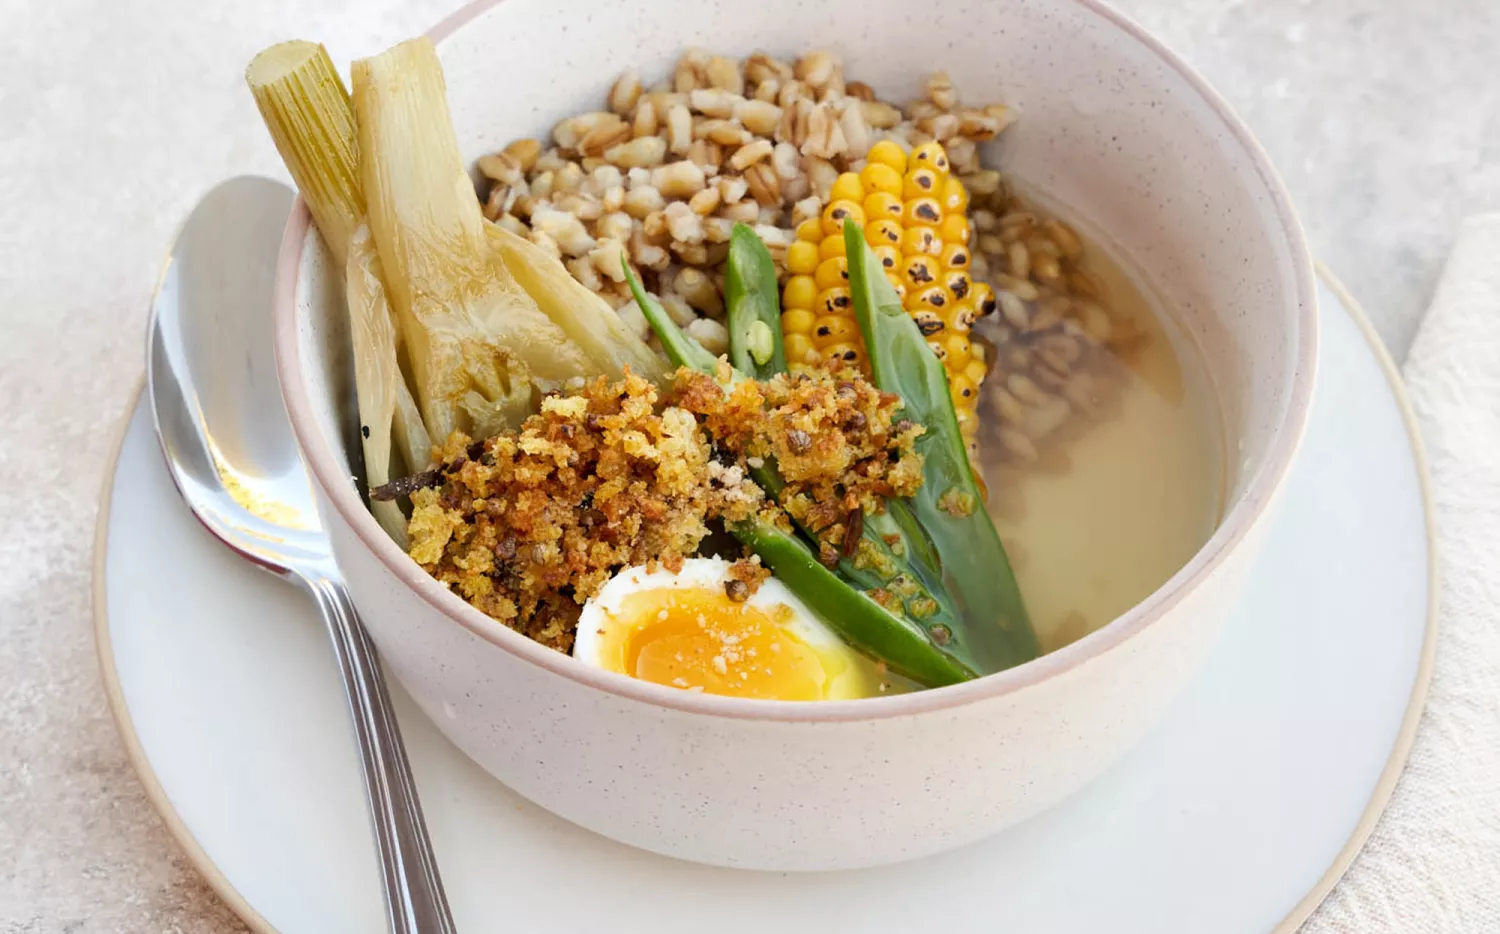 Sopa de vegetales, con cebada y huevo: la receta para que te salga deliciosa